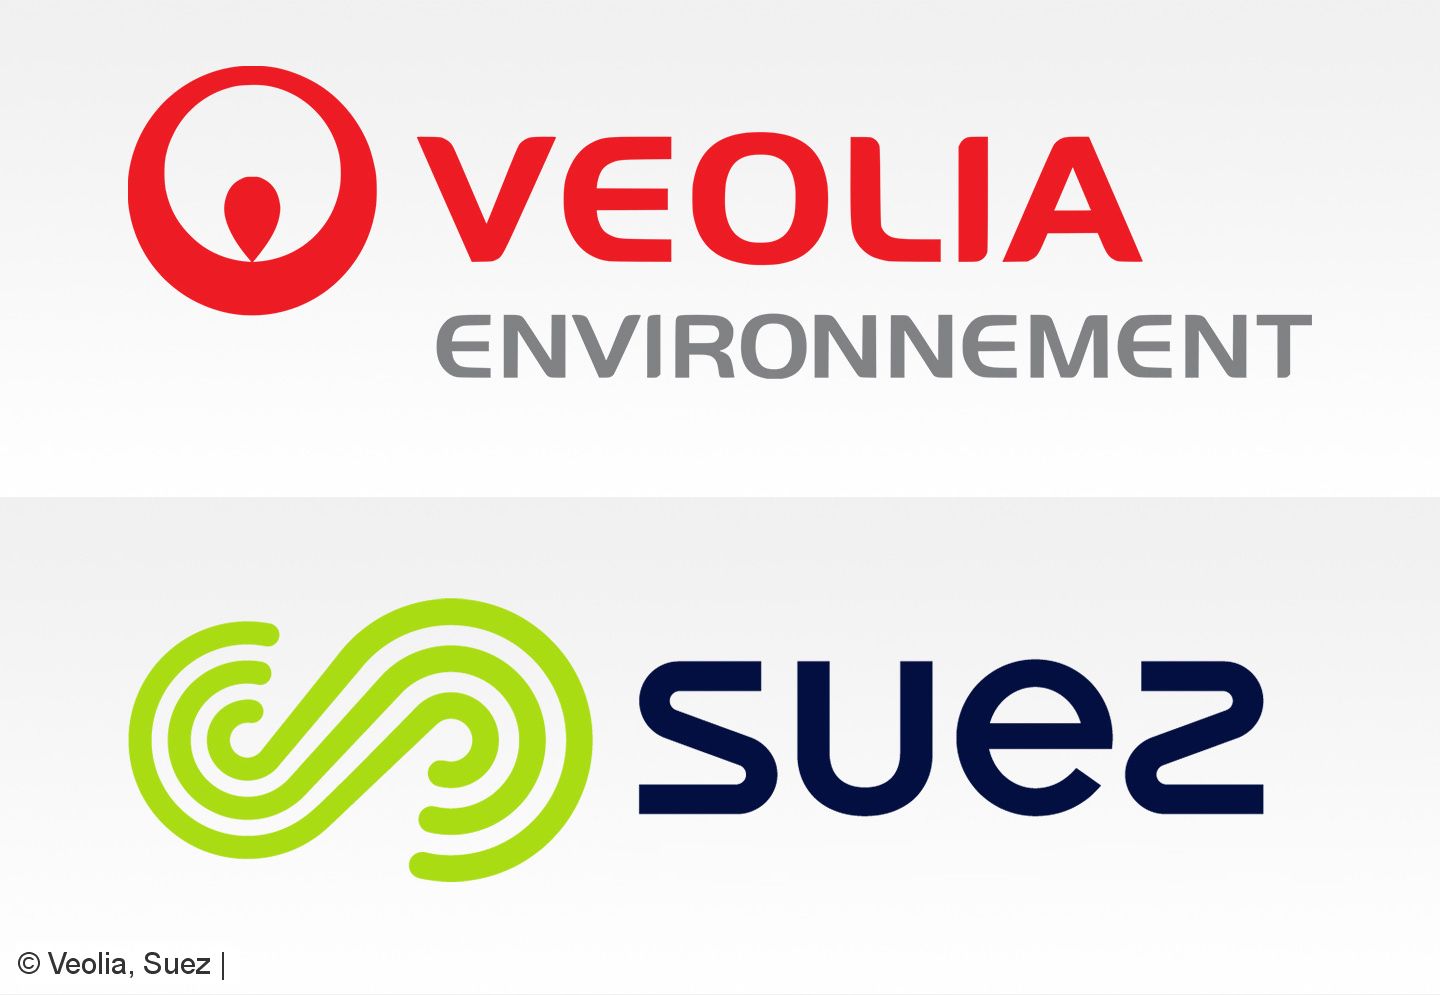 Suez-Verwaltungsrat empfiehlt Annahme des Veolia-Angebots